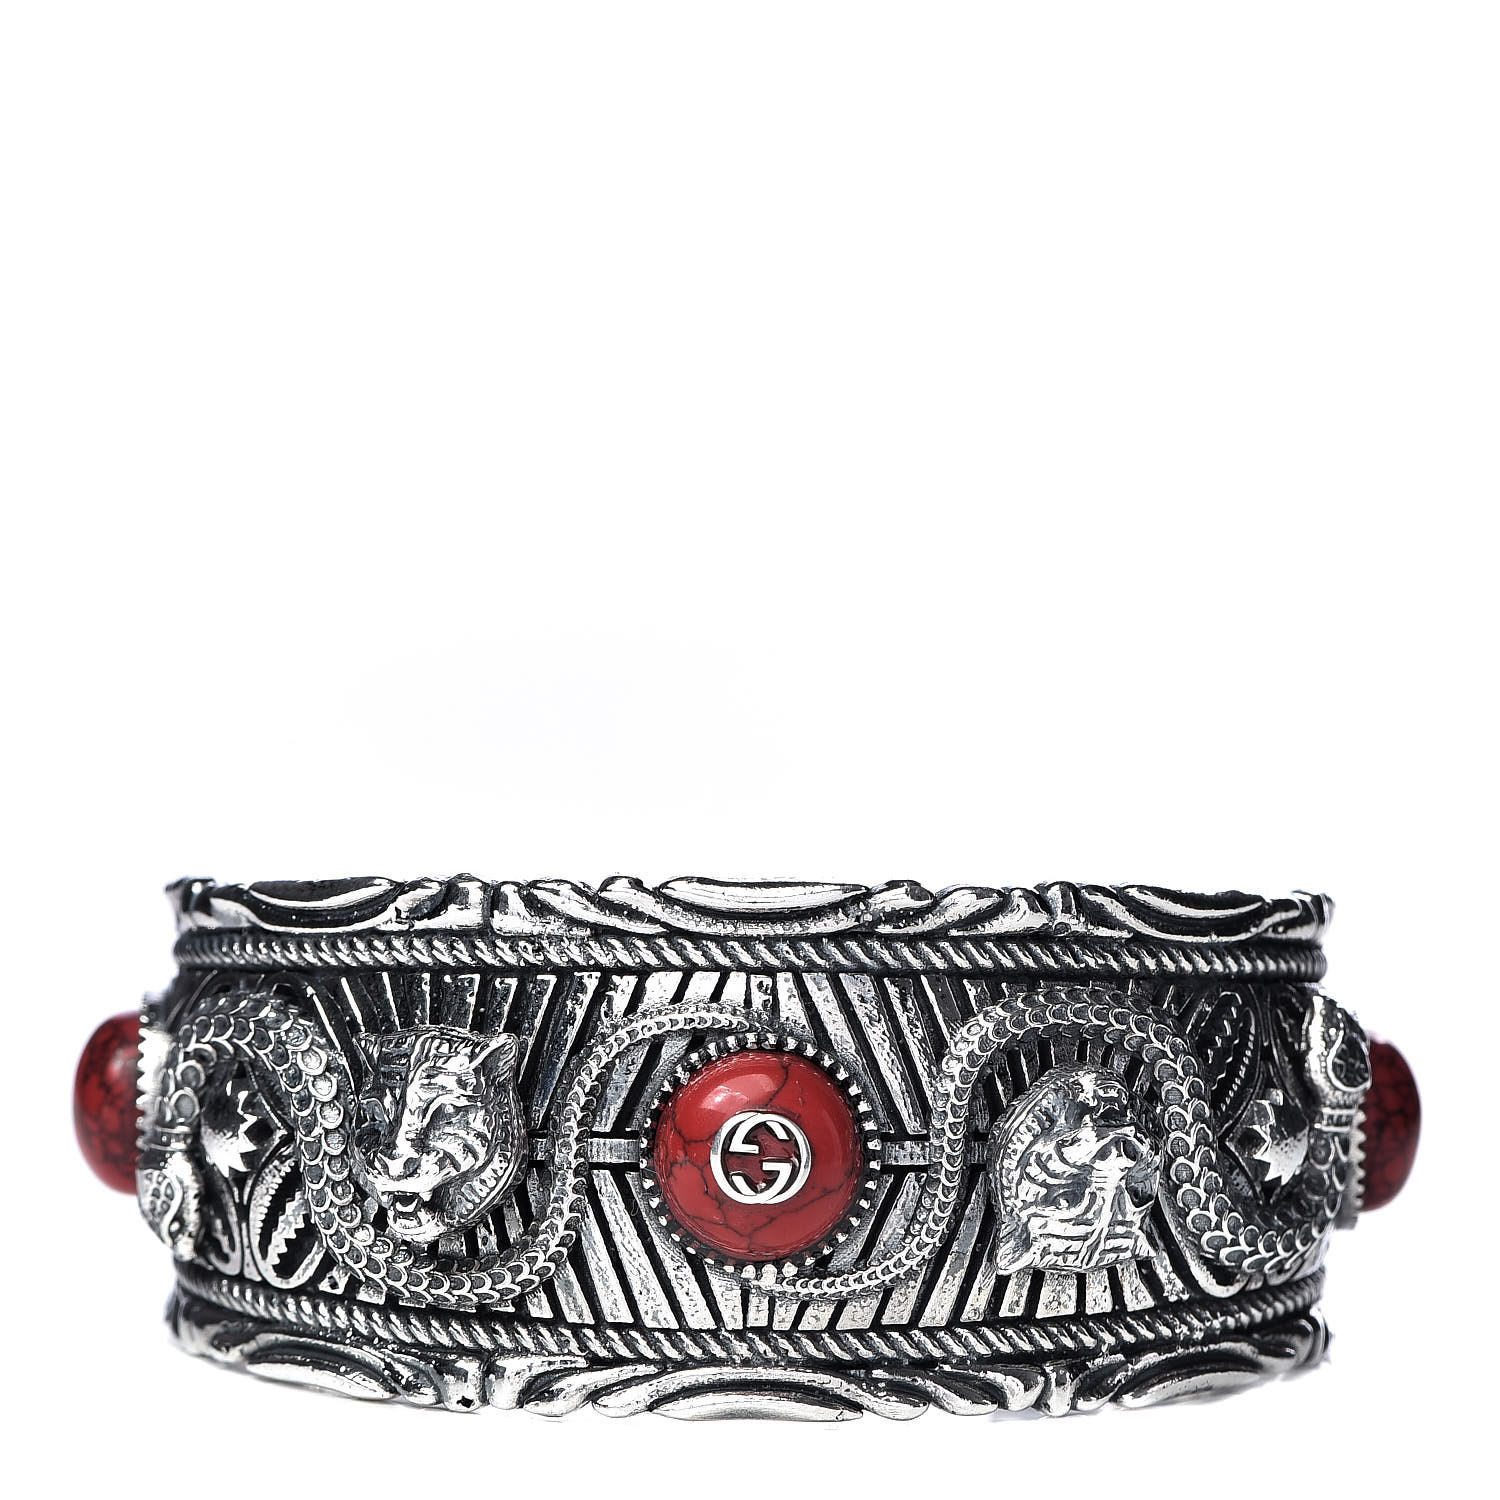 gucci garden bracelet in silver